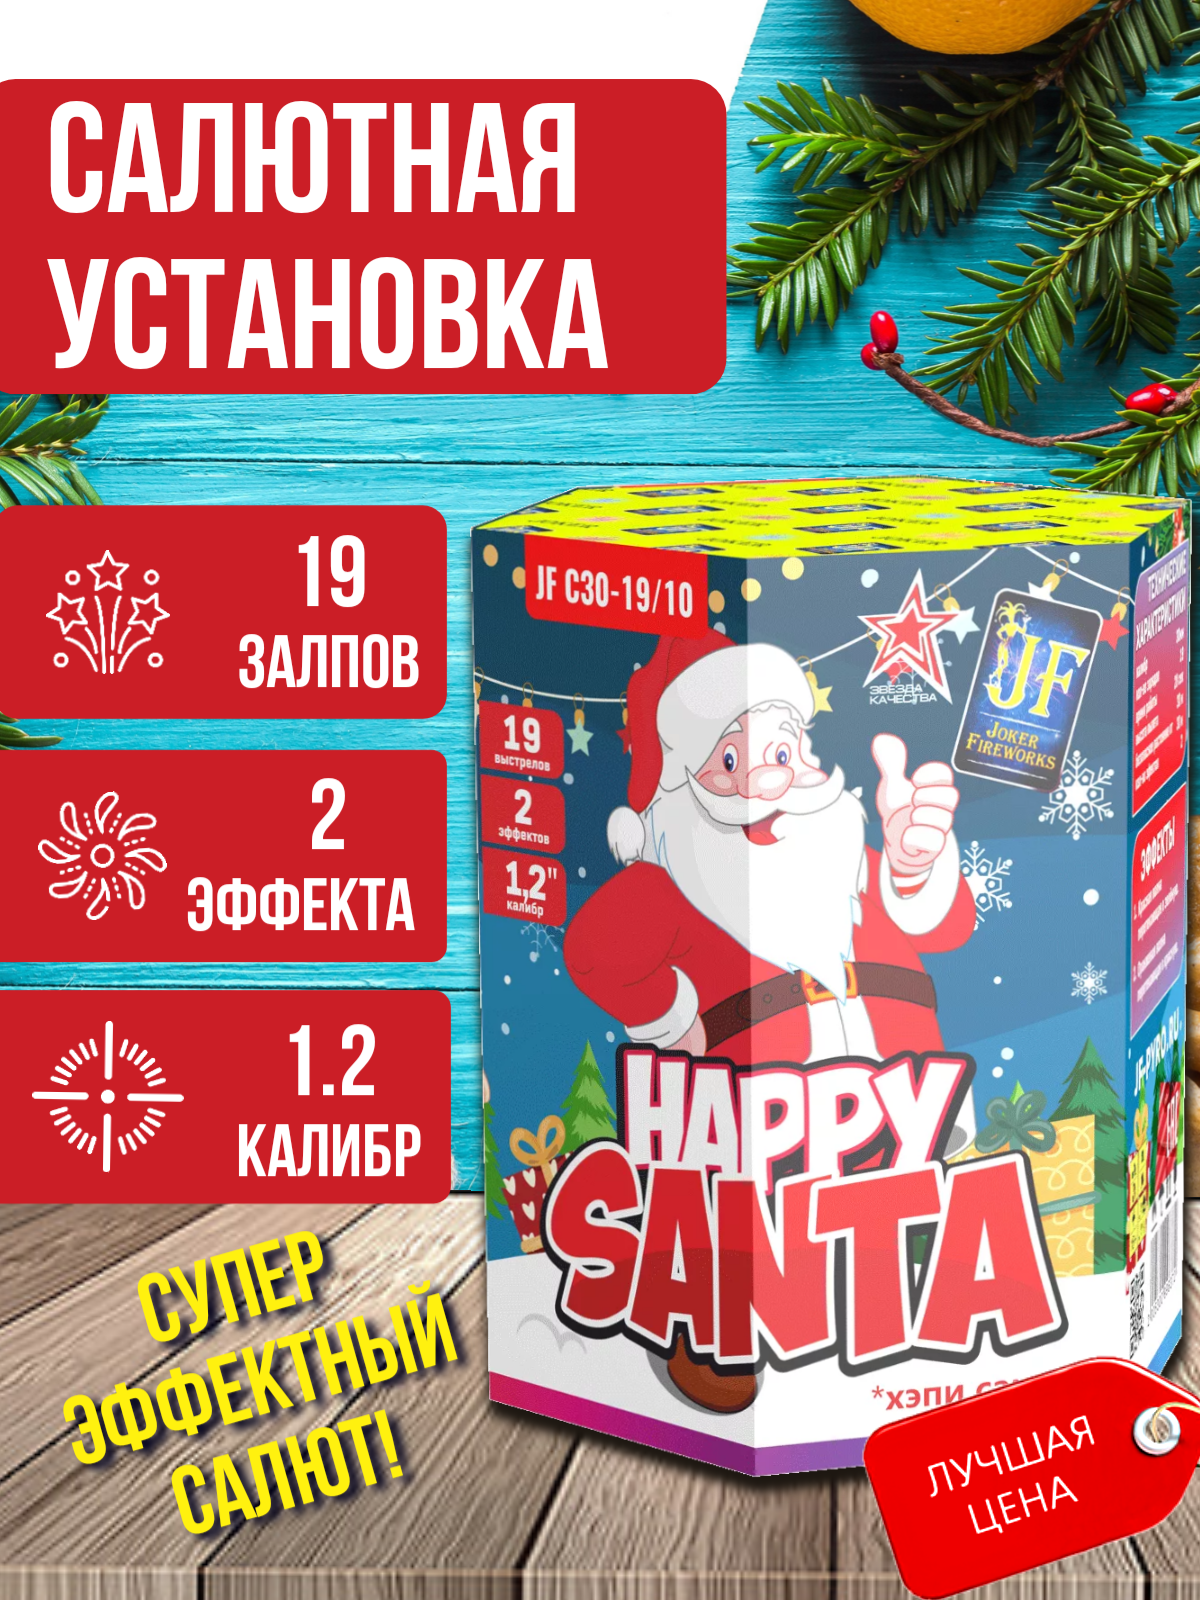 JF С30-19/10  Фейерверк/Салют "Happy Santa" калибр 1.2х19 залпов